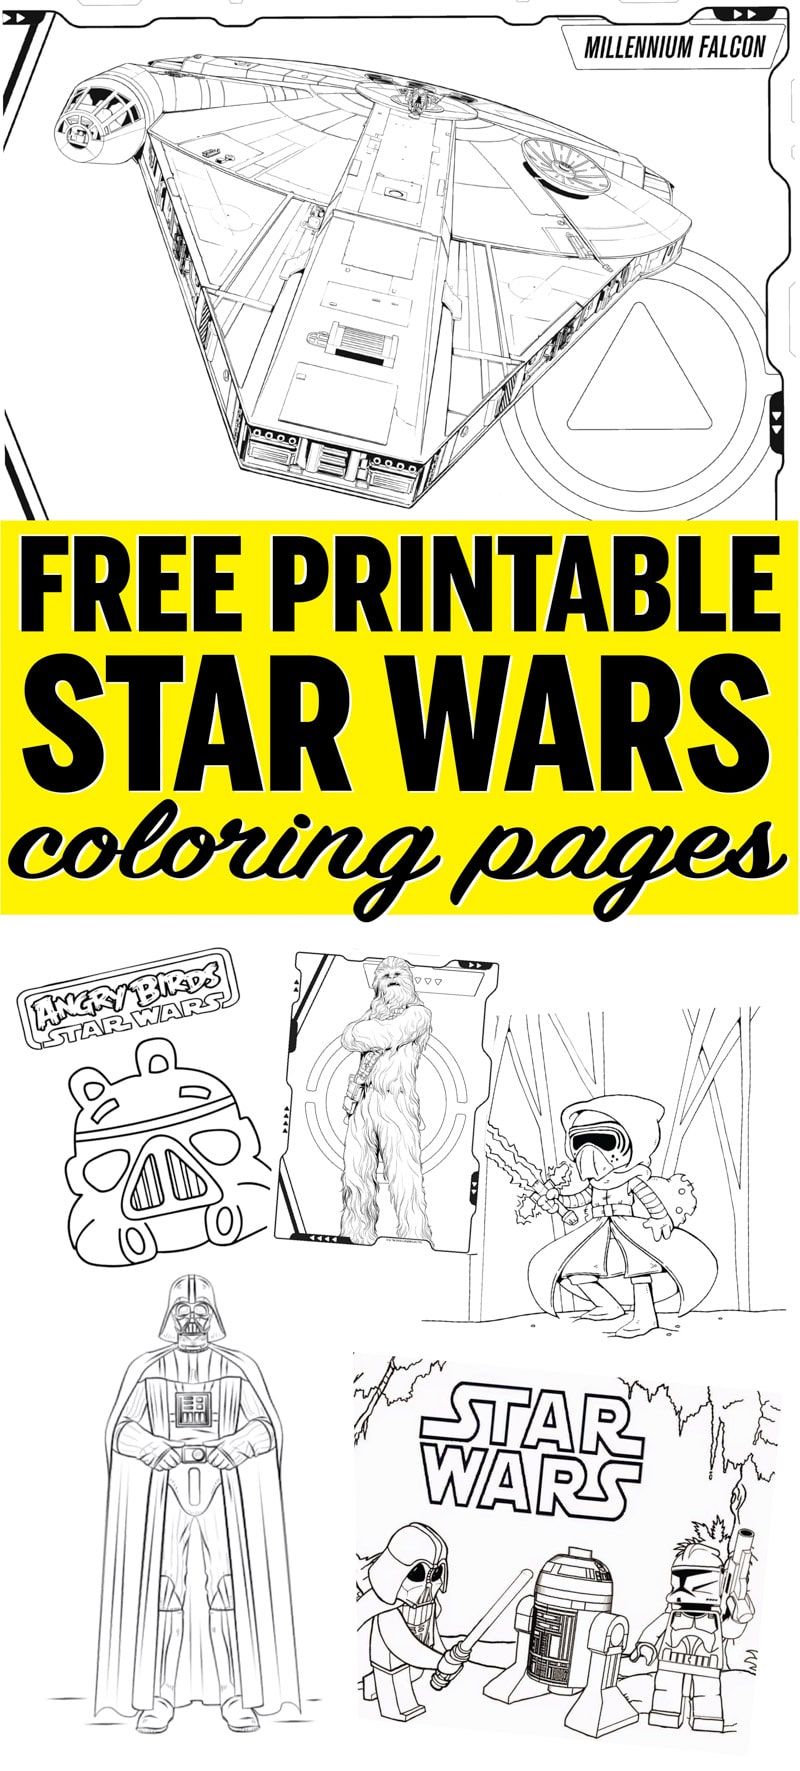 Τόνοι εύκολων σελίδων ζωγραφικής Star Wars! Δωρεάν εκτυπώσεις από τους αγαπημένους σας χαρακτήρες όπως οι Kylo Ren, Darth Vader, Princess Leia, Yoda και πολλά άλλα! Ιδανικό για παιδιά!